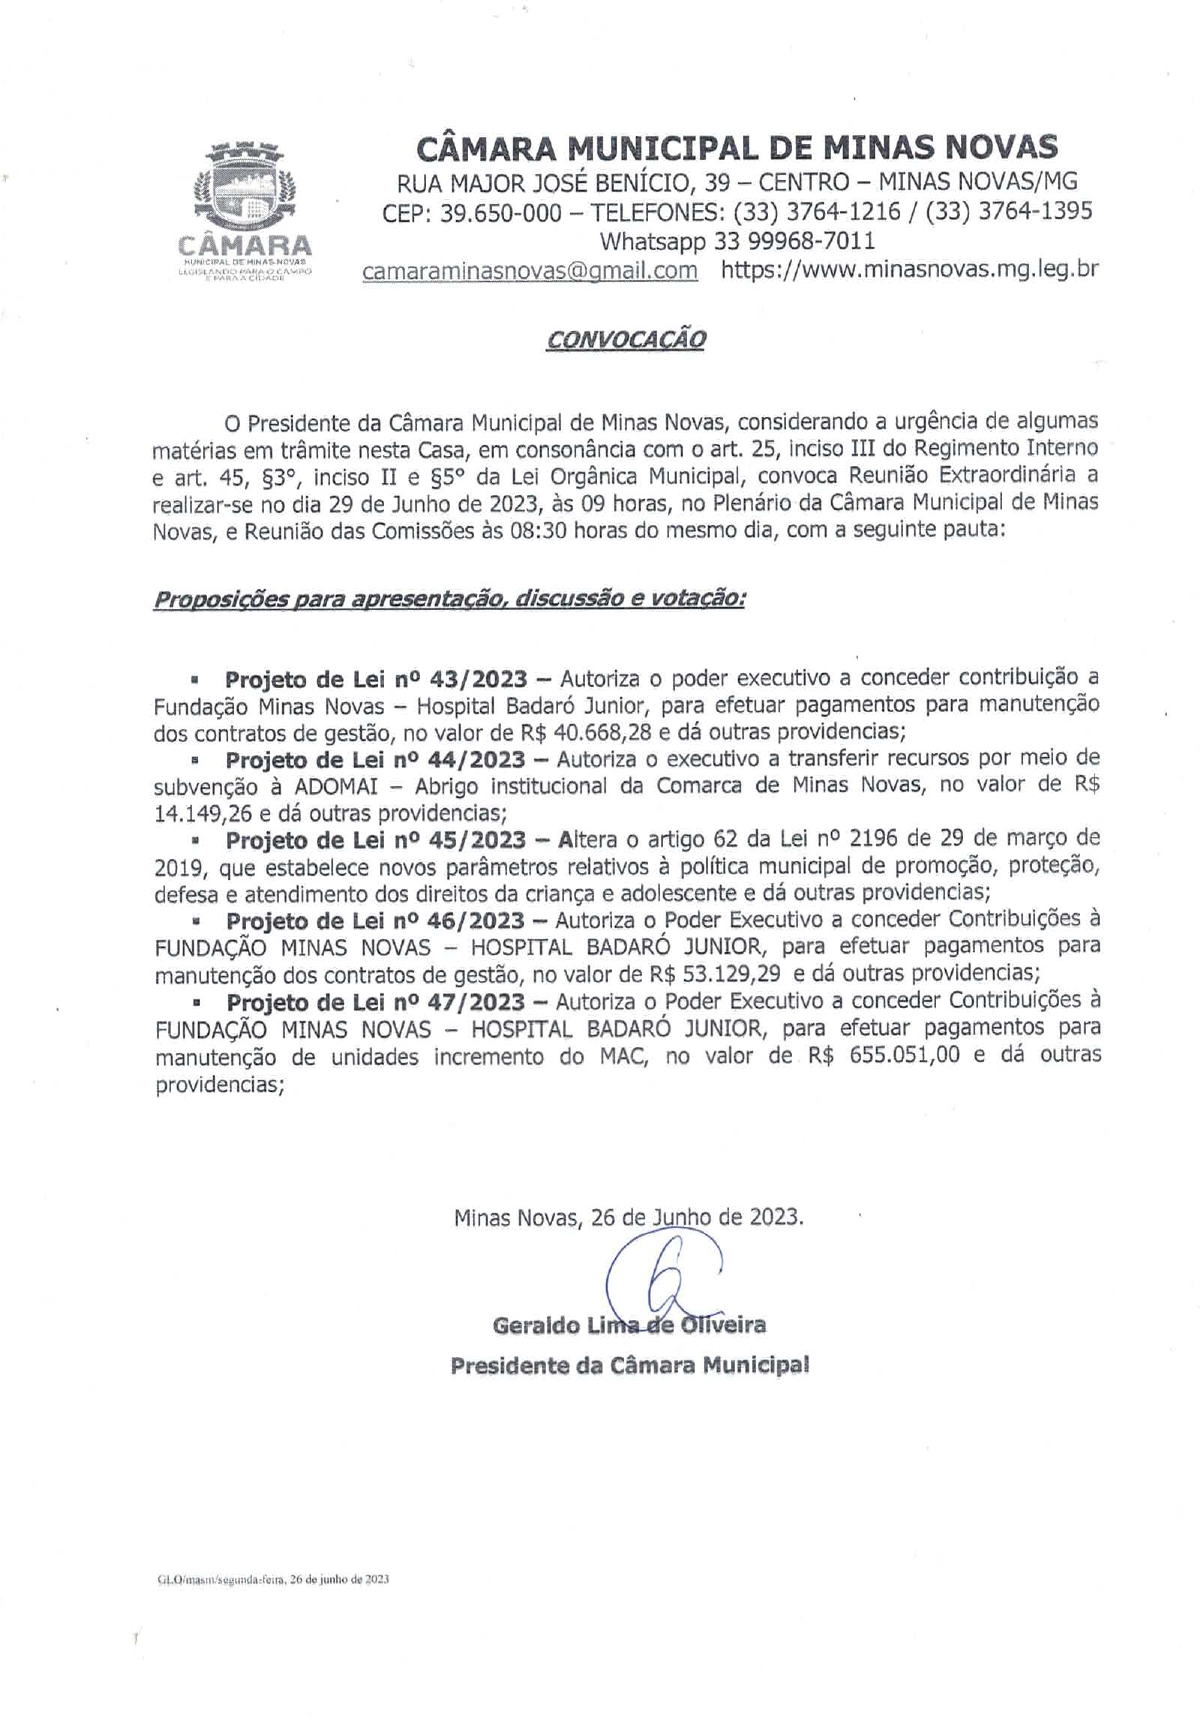 Convocação para a 01ª Reunião Extraordinária da Câmara Municipal de Minas Novas (Exercício de 2023)